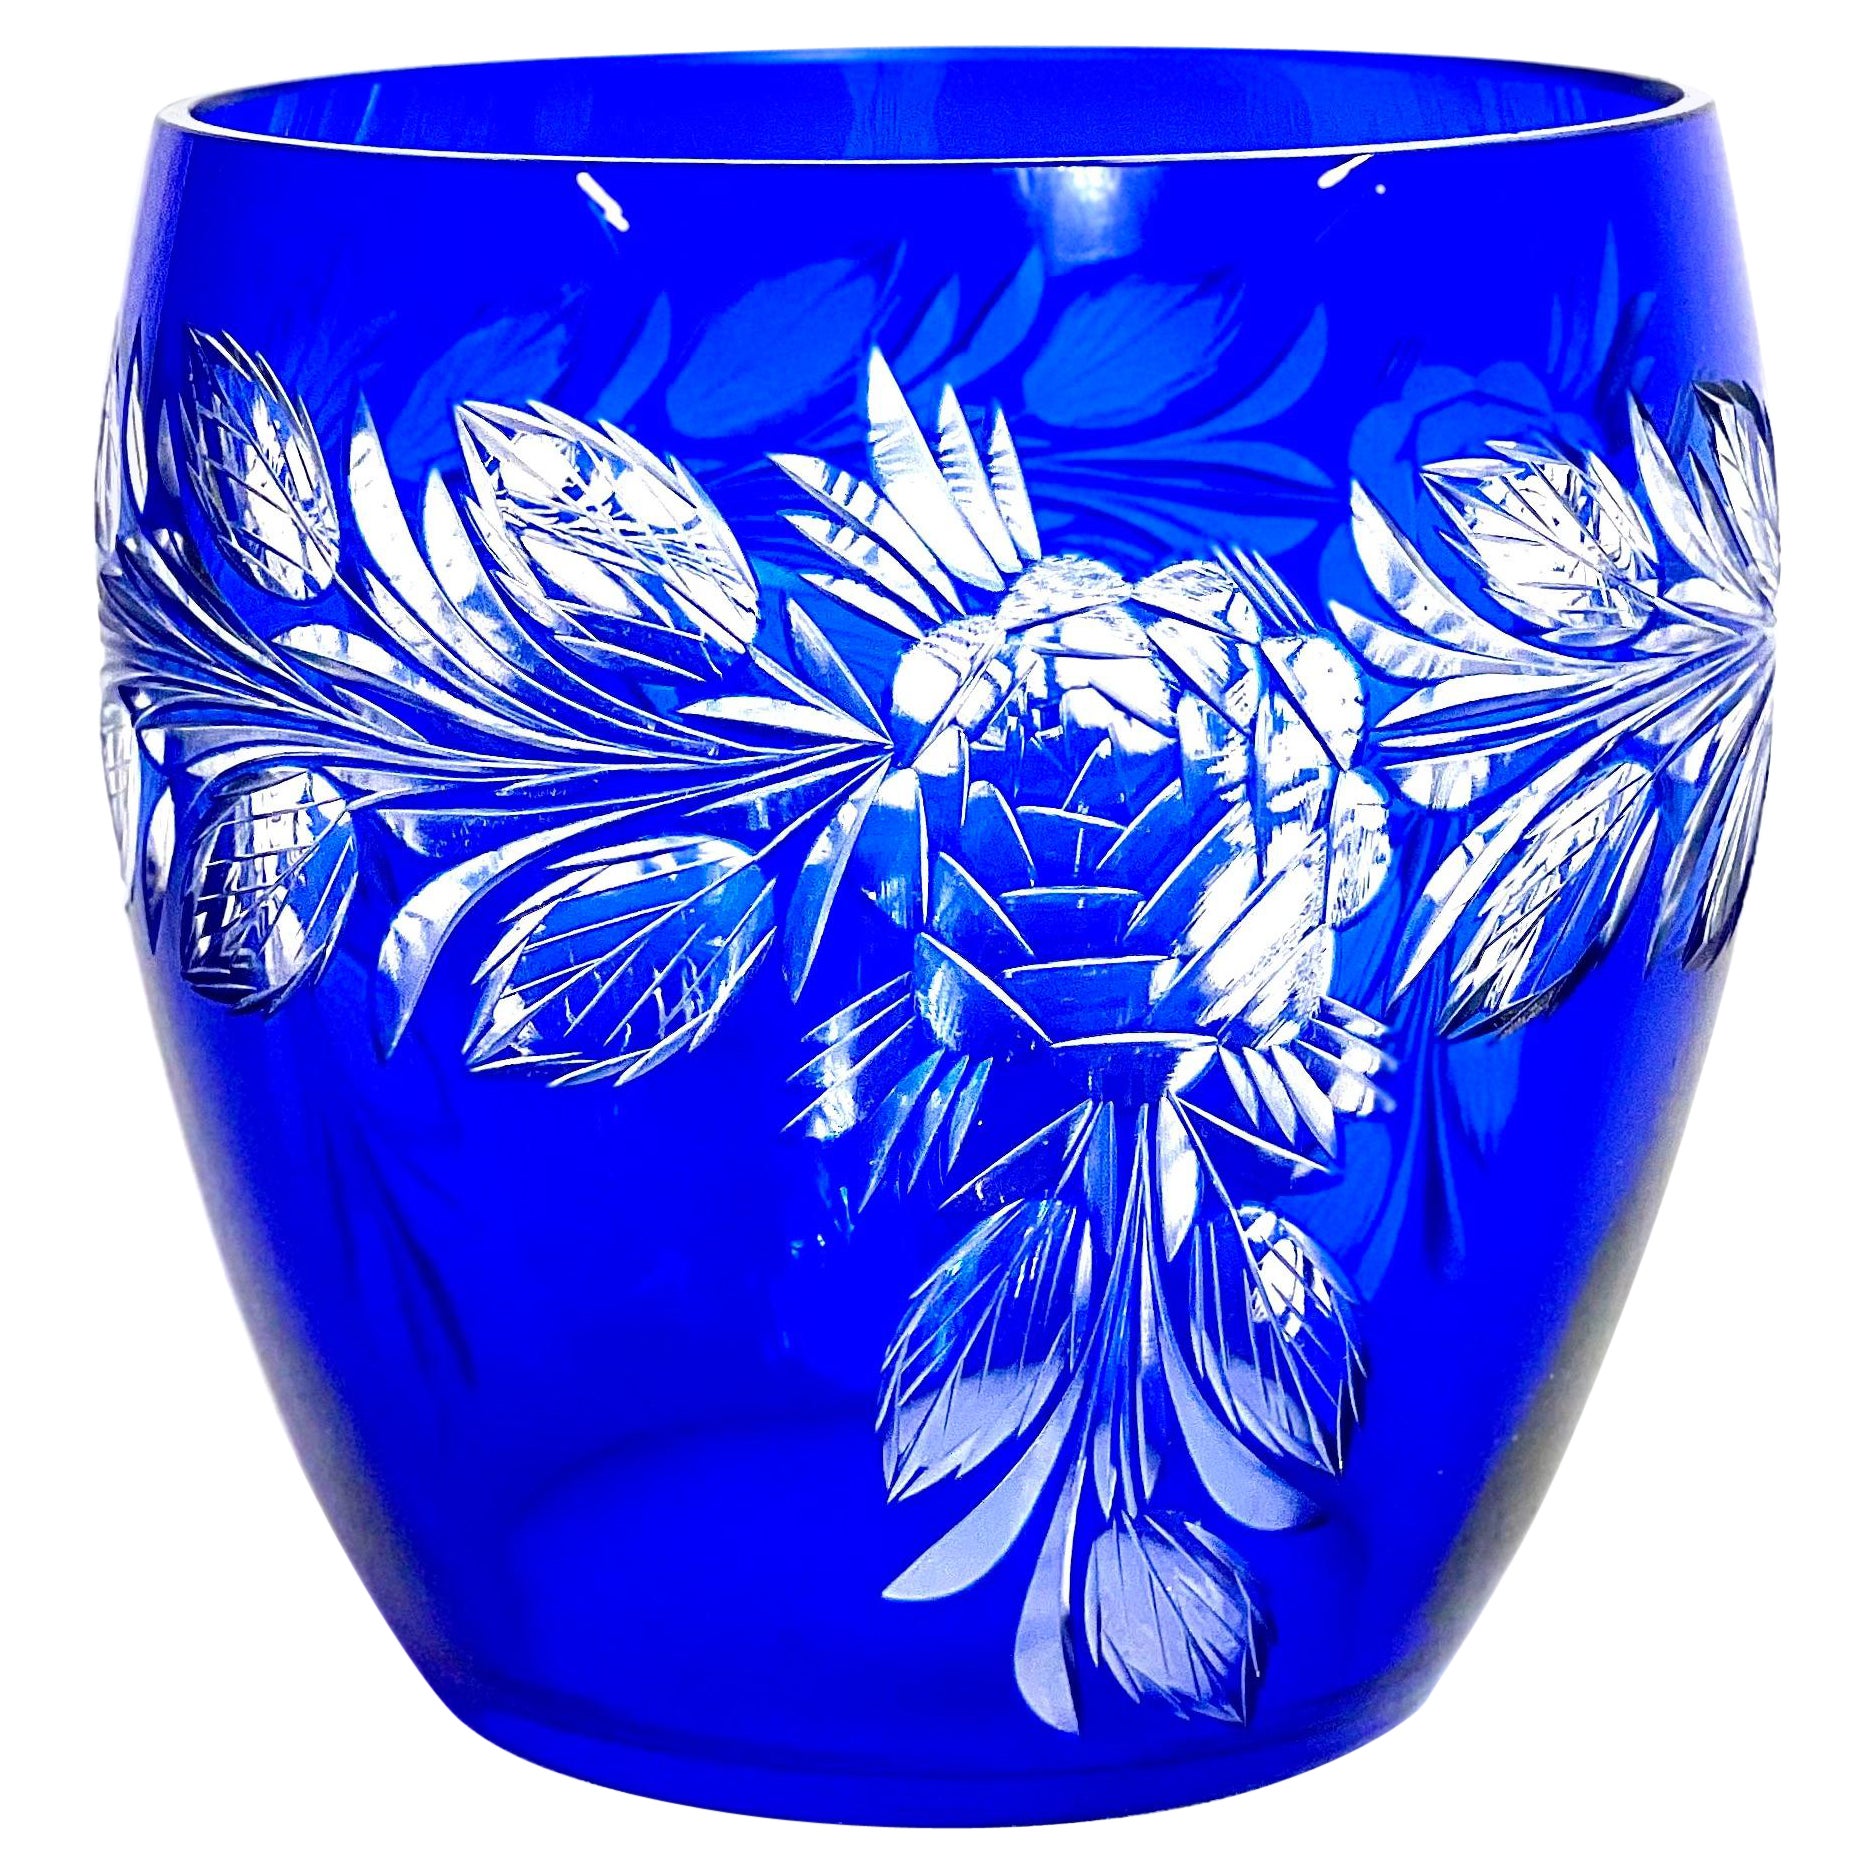 Cobalt-Blue Crystal Overlay Bowl-Shaped Vase